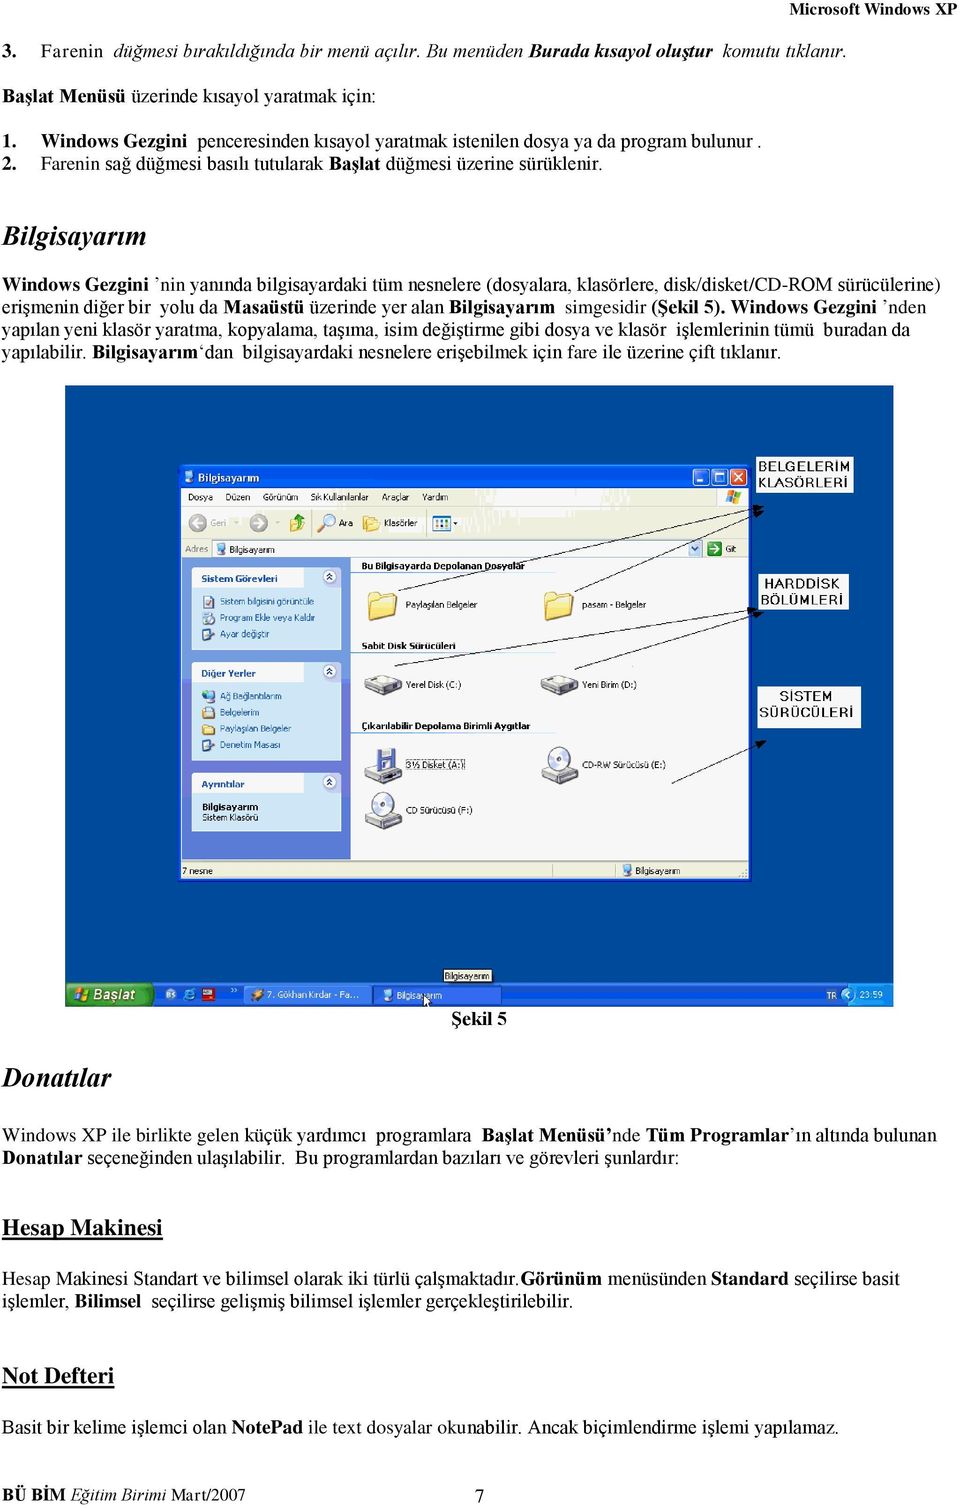 Microsoft Windows XP Bilgisayarım Windows Gezgini nin yanında bilgisayardaki tüm nesnelere (dosyalara, klasörlere, disk/disket/cd-rom sürücülerine) erişmenin diğer bir yolu da Masaüstü üzerinde yer